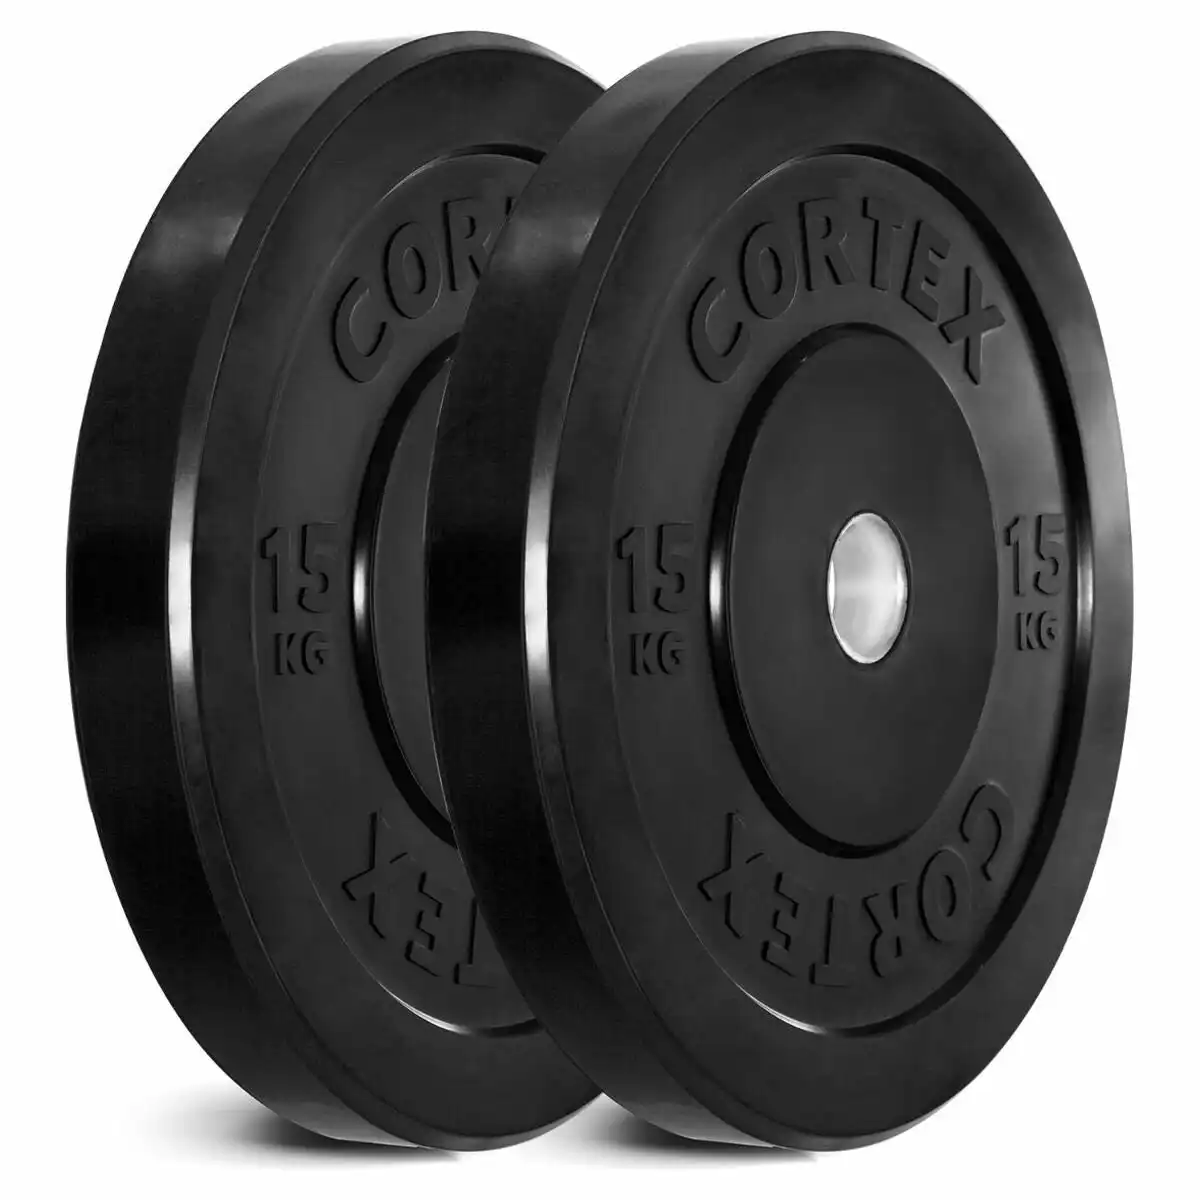 Cortex Black 15kg Bumper Plate Pair